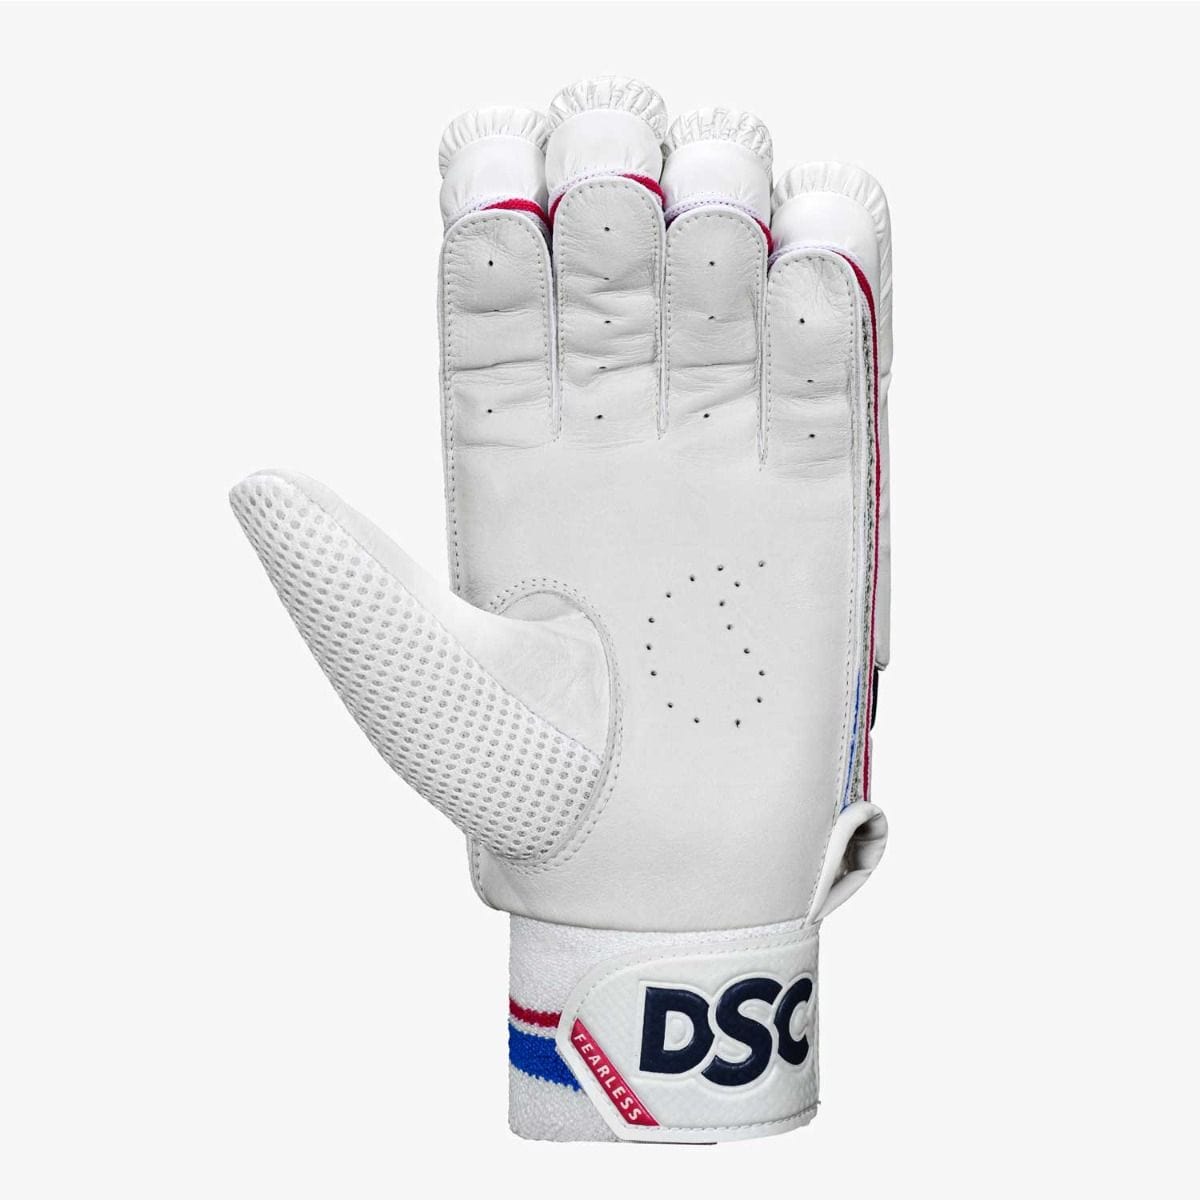 DSC Batting Gloves Intense Valor Batting Gloves